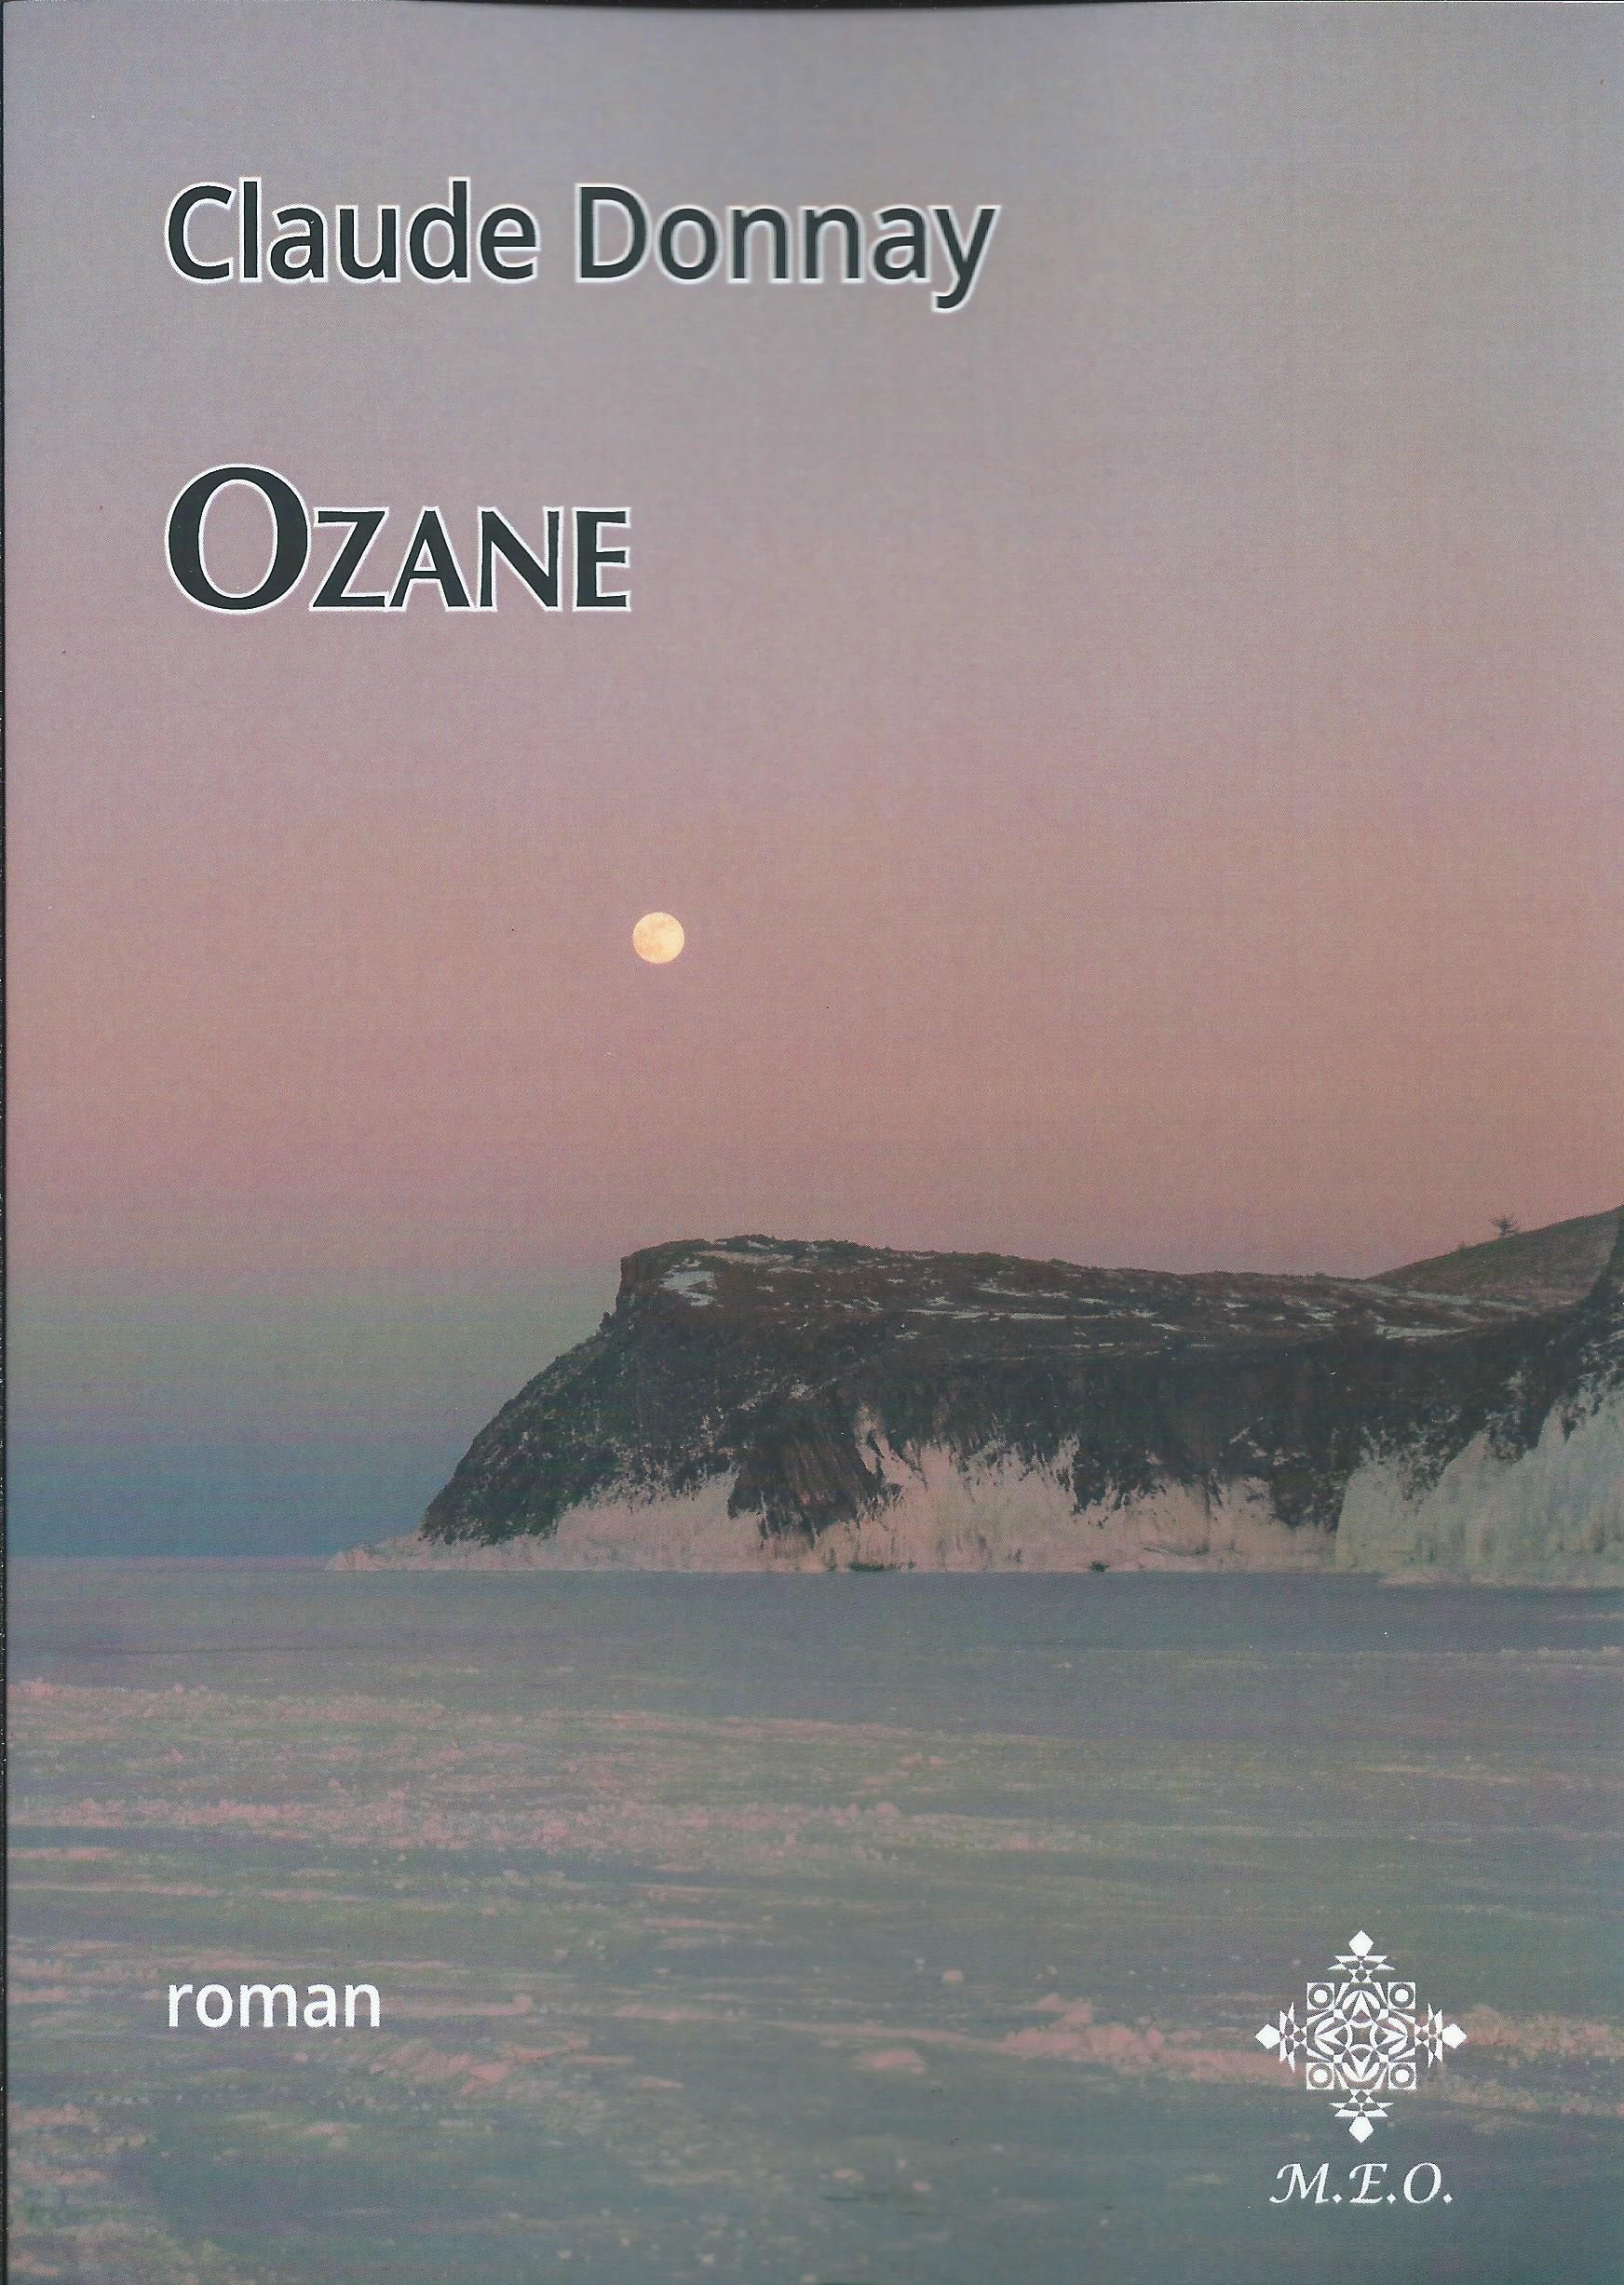 CLAUDE DONNAY - Ozane